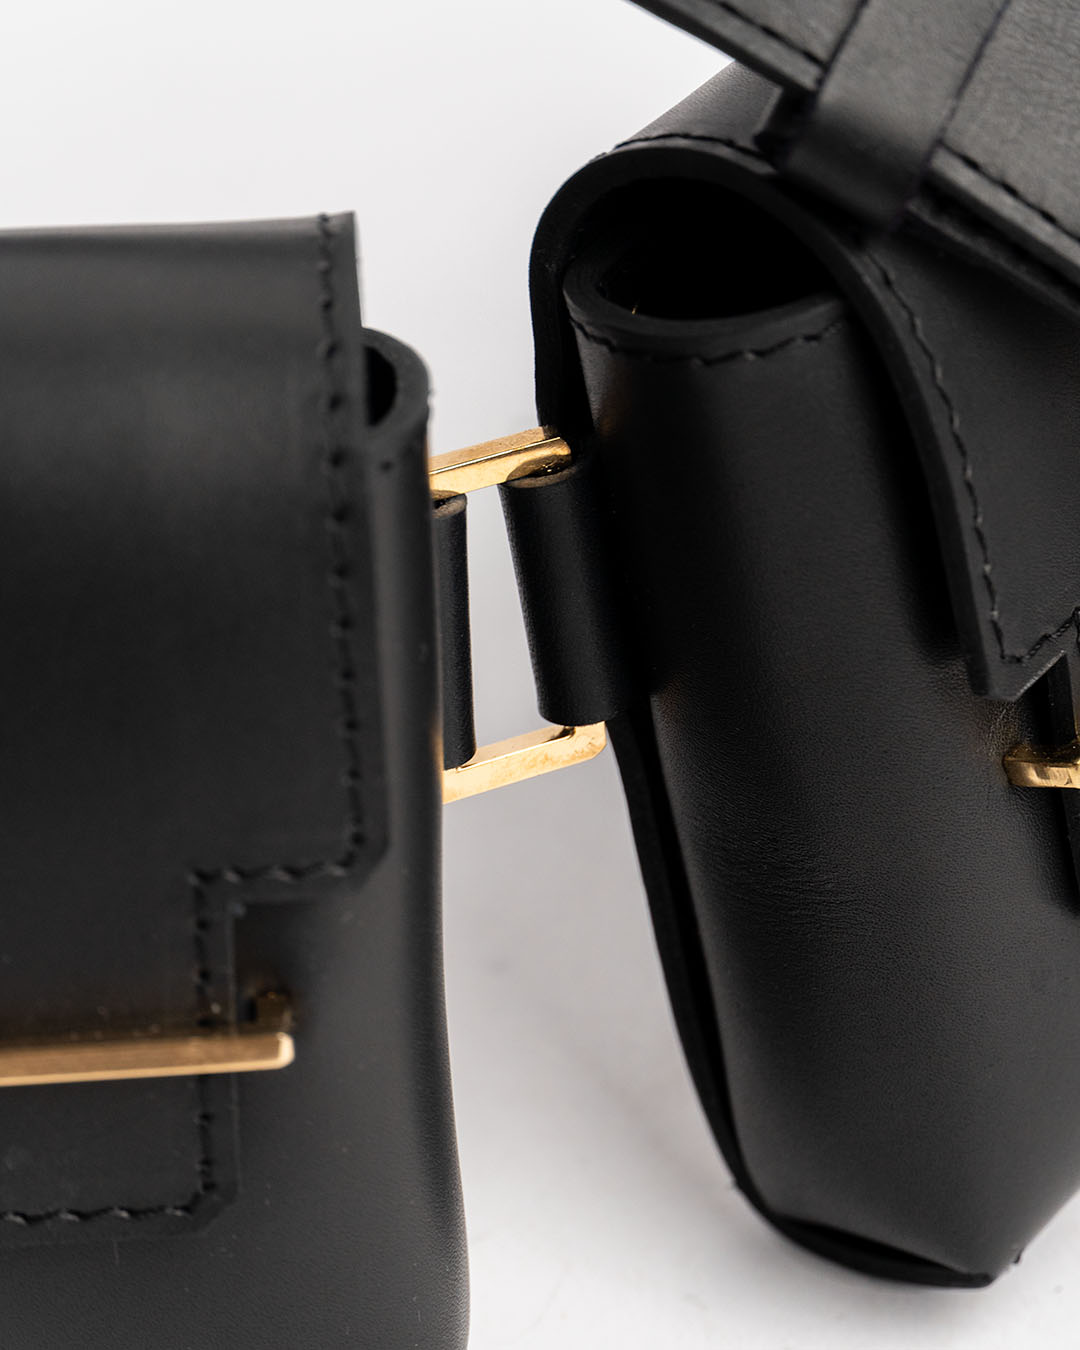 Sling bag leather black gold handmade handcrafted